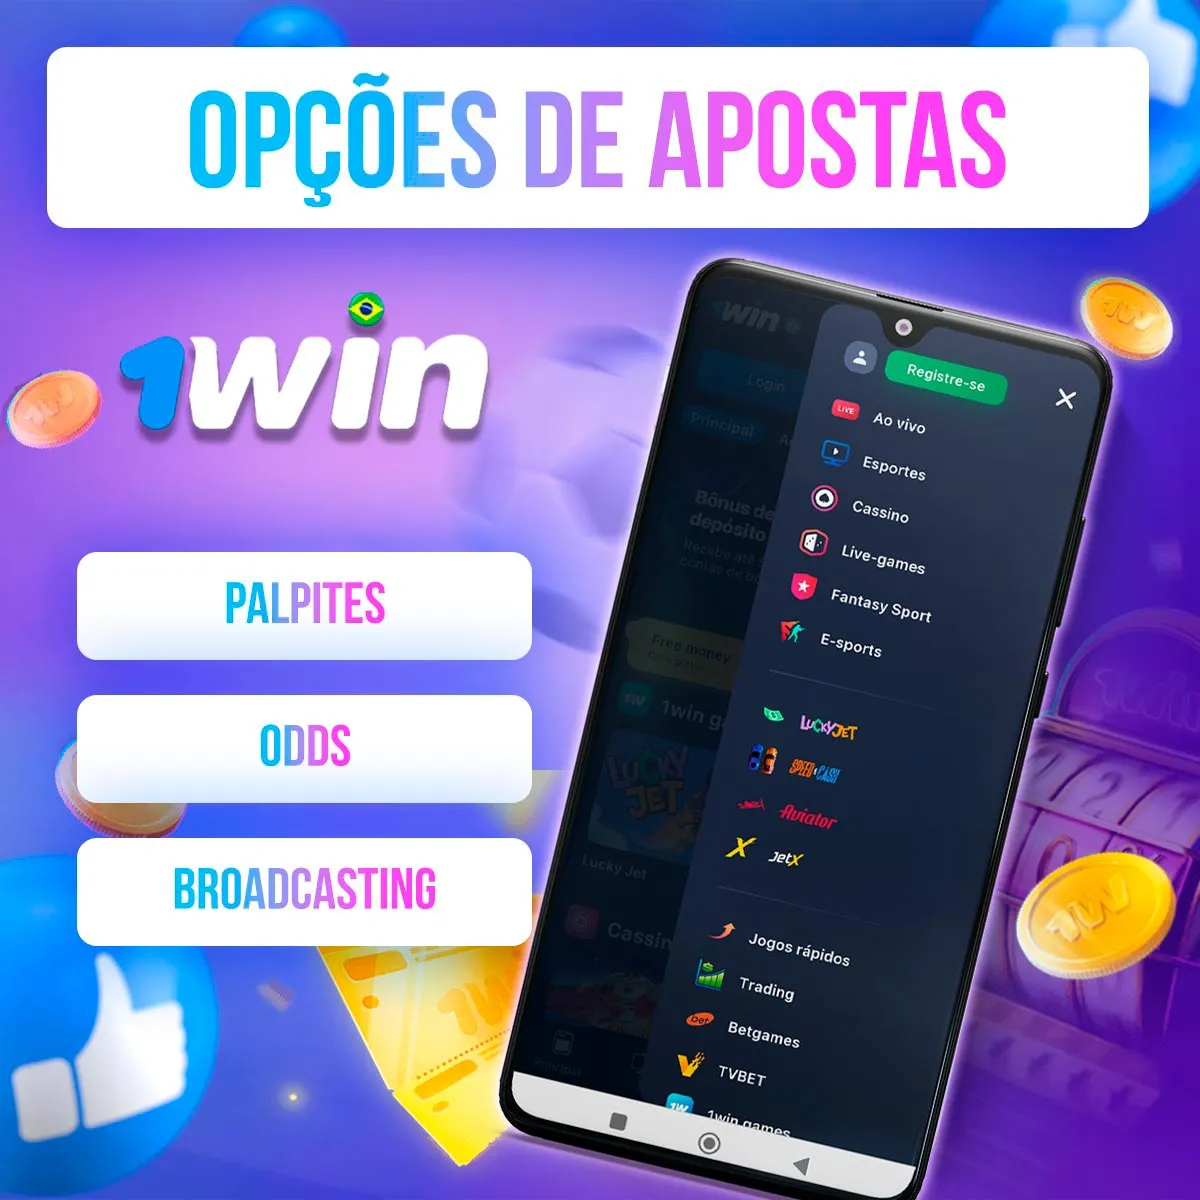 Uma visão geral das opções de apostas no aplicativo de apostas 1win no Brasil